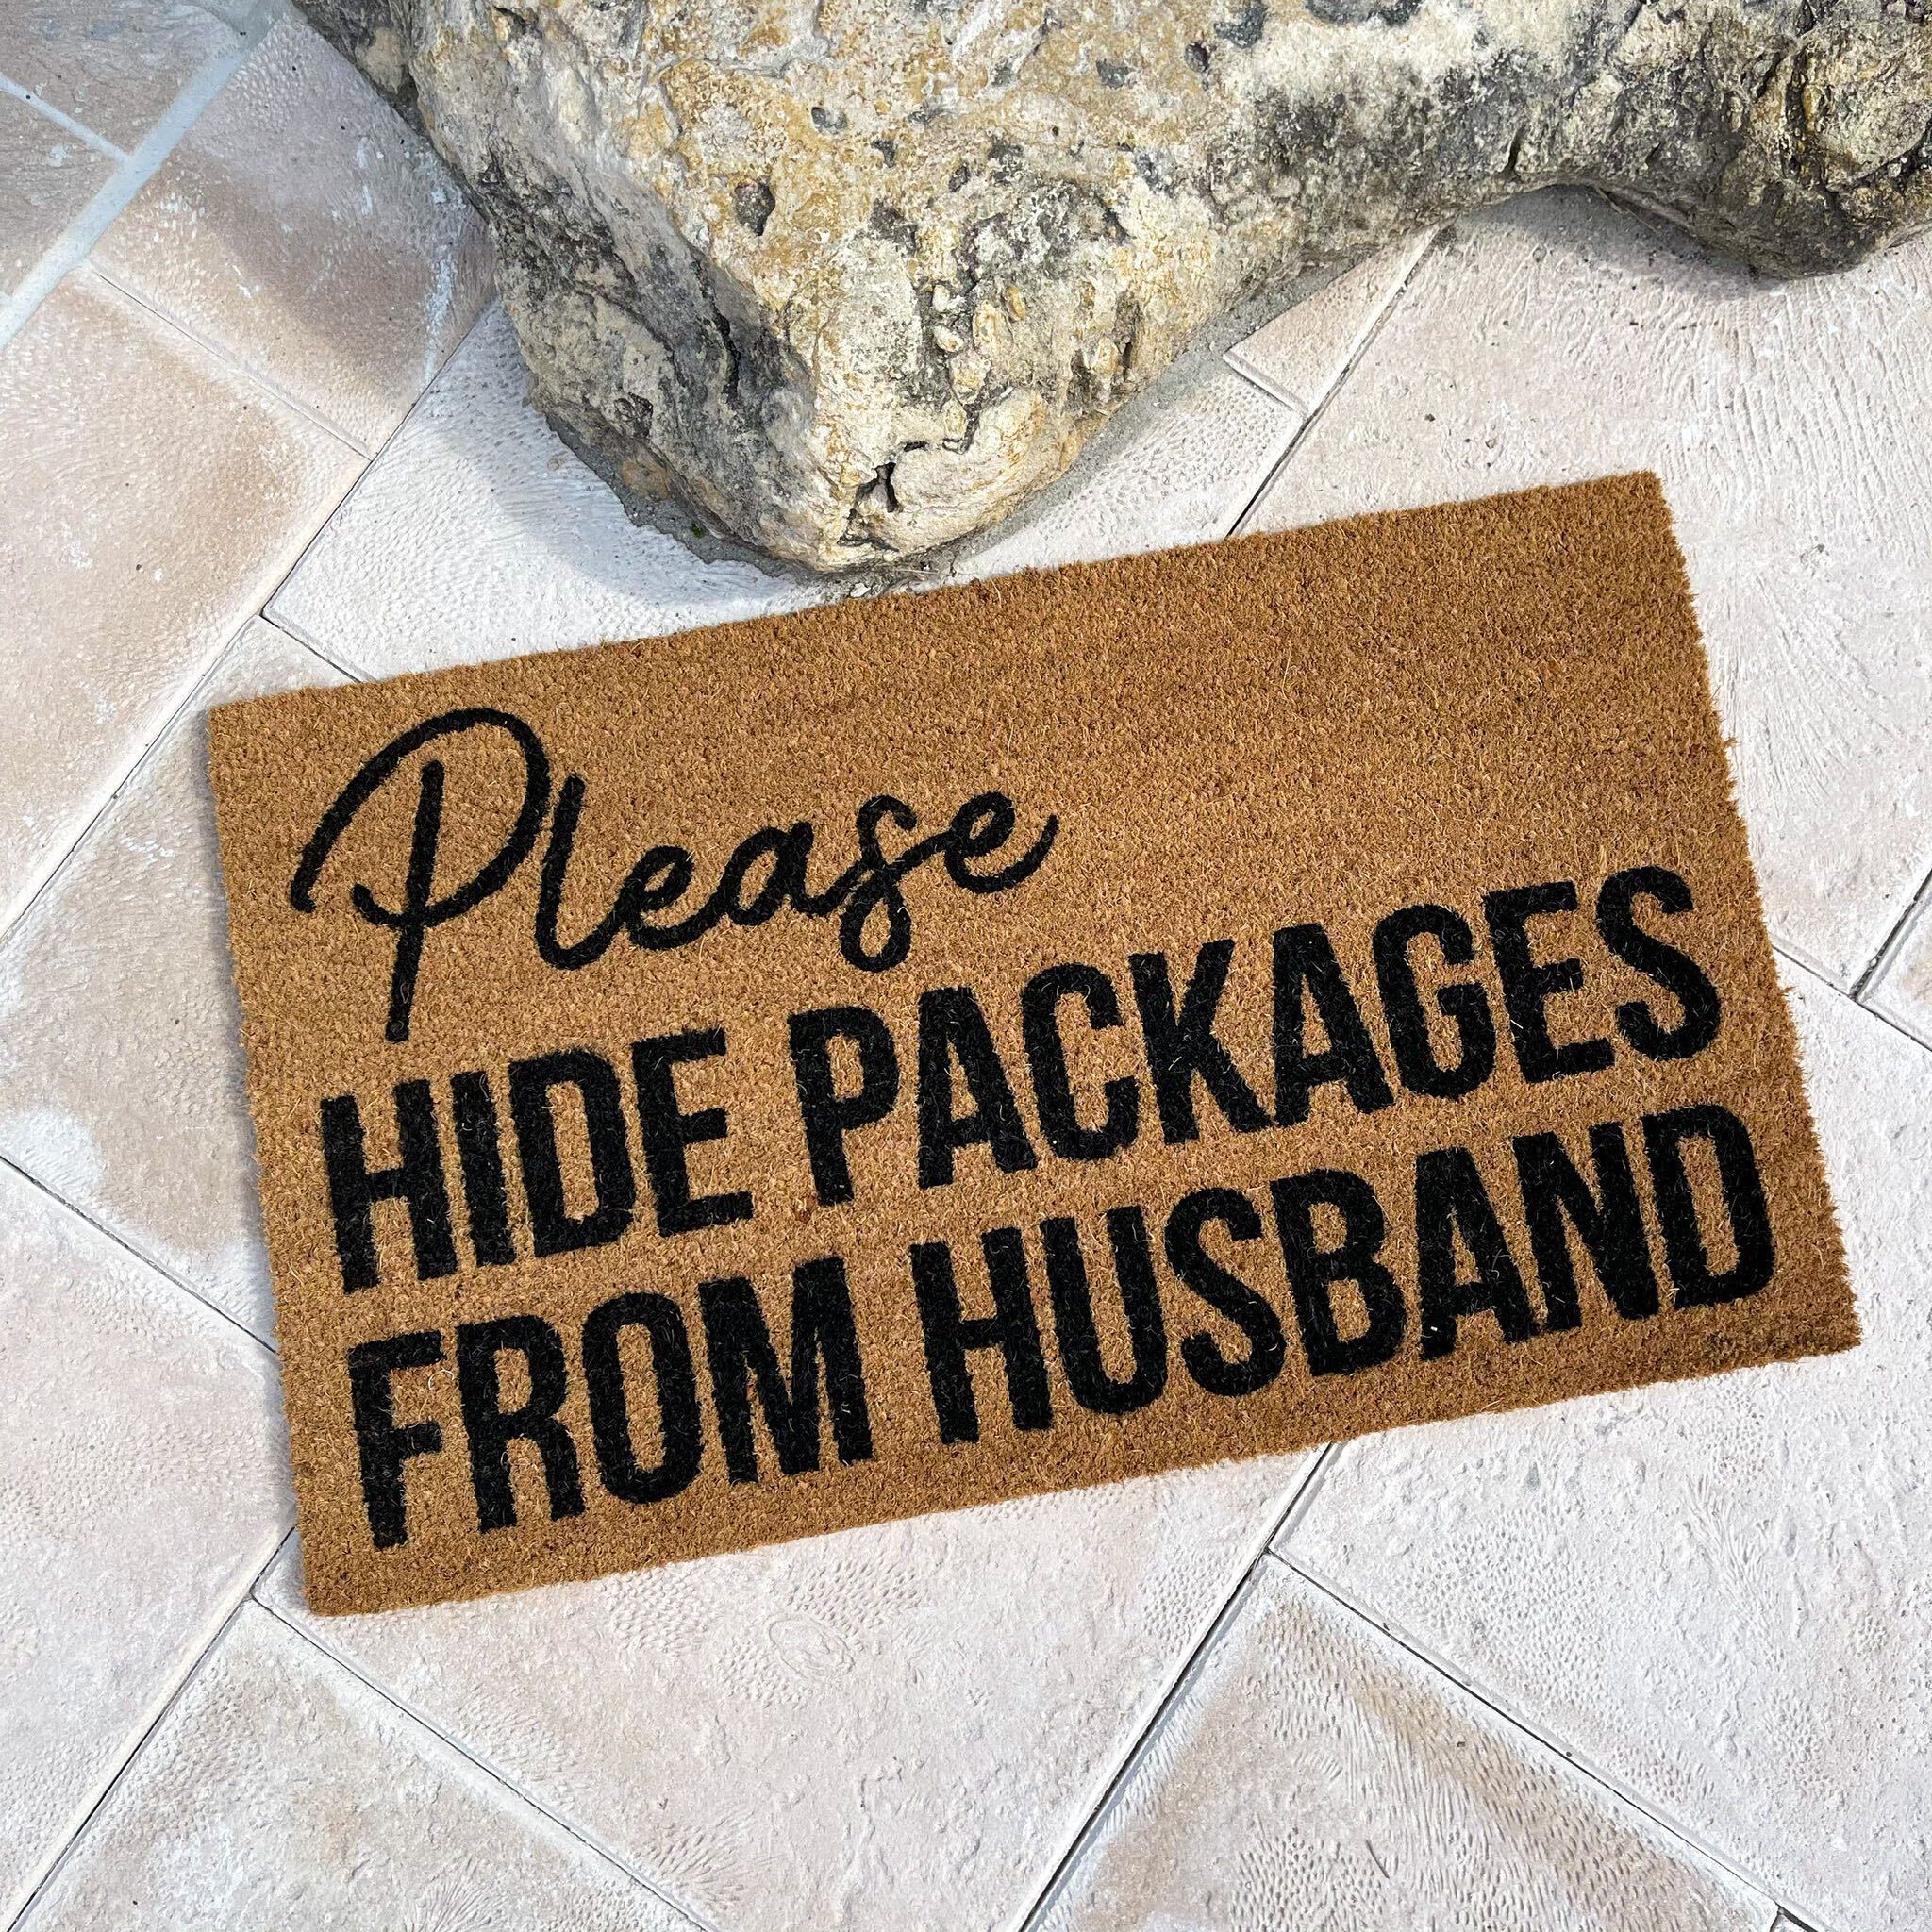 Hide The Packages Coir Doormat